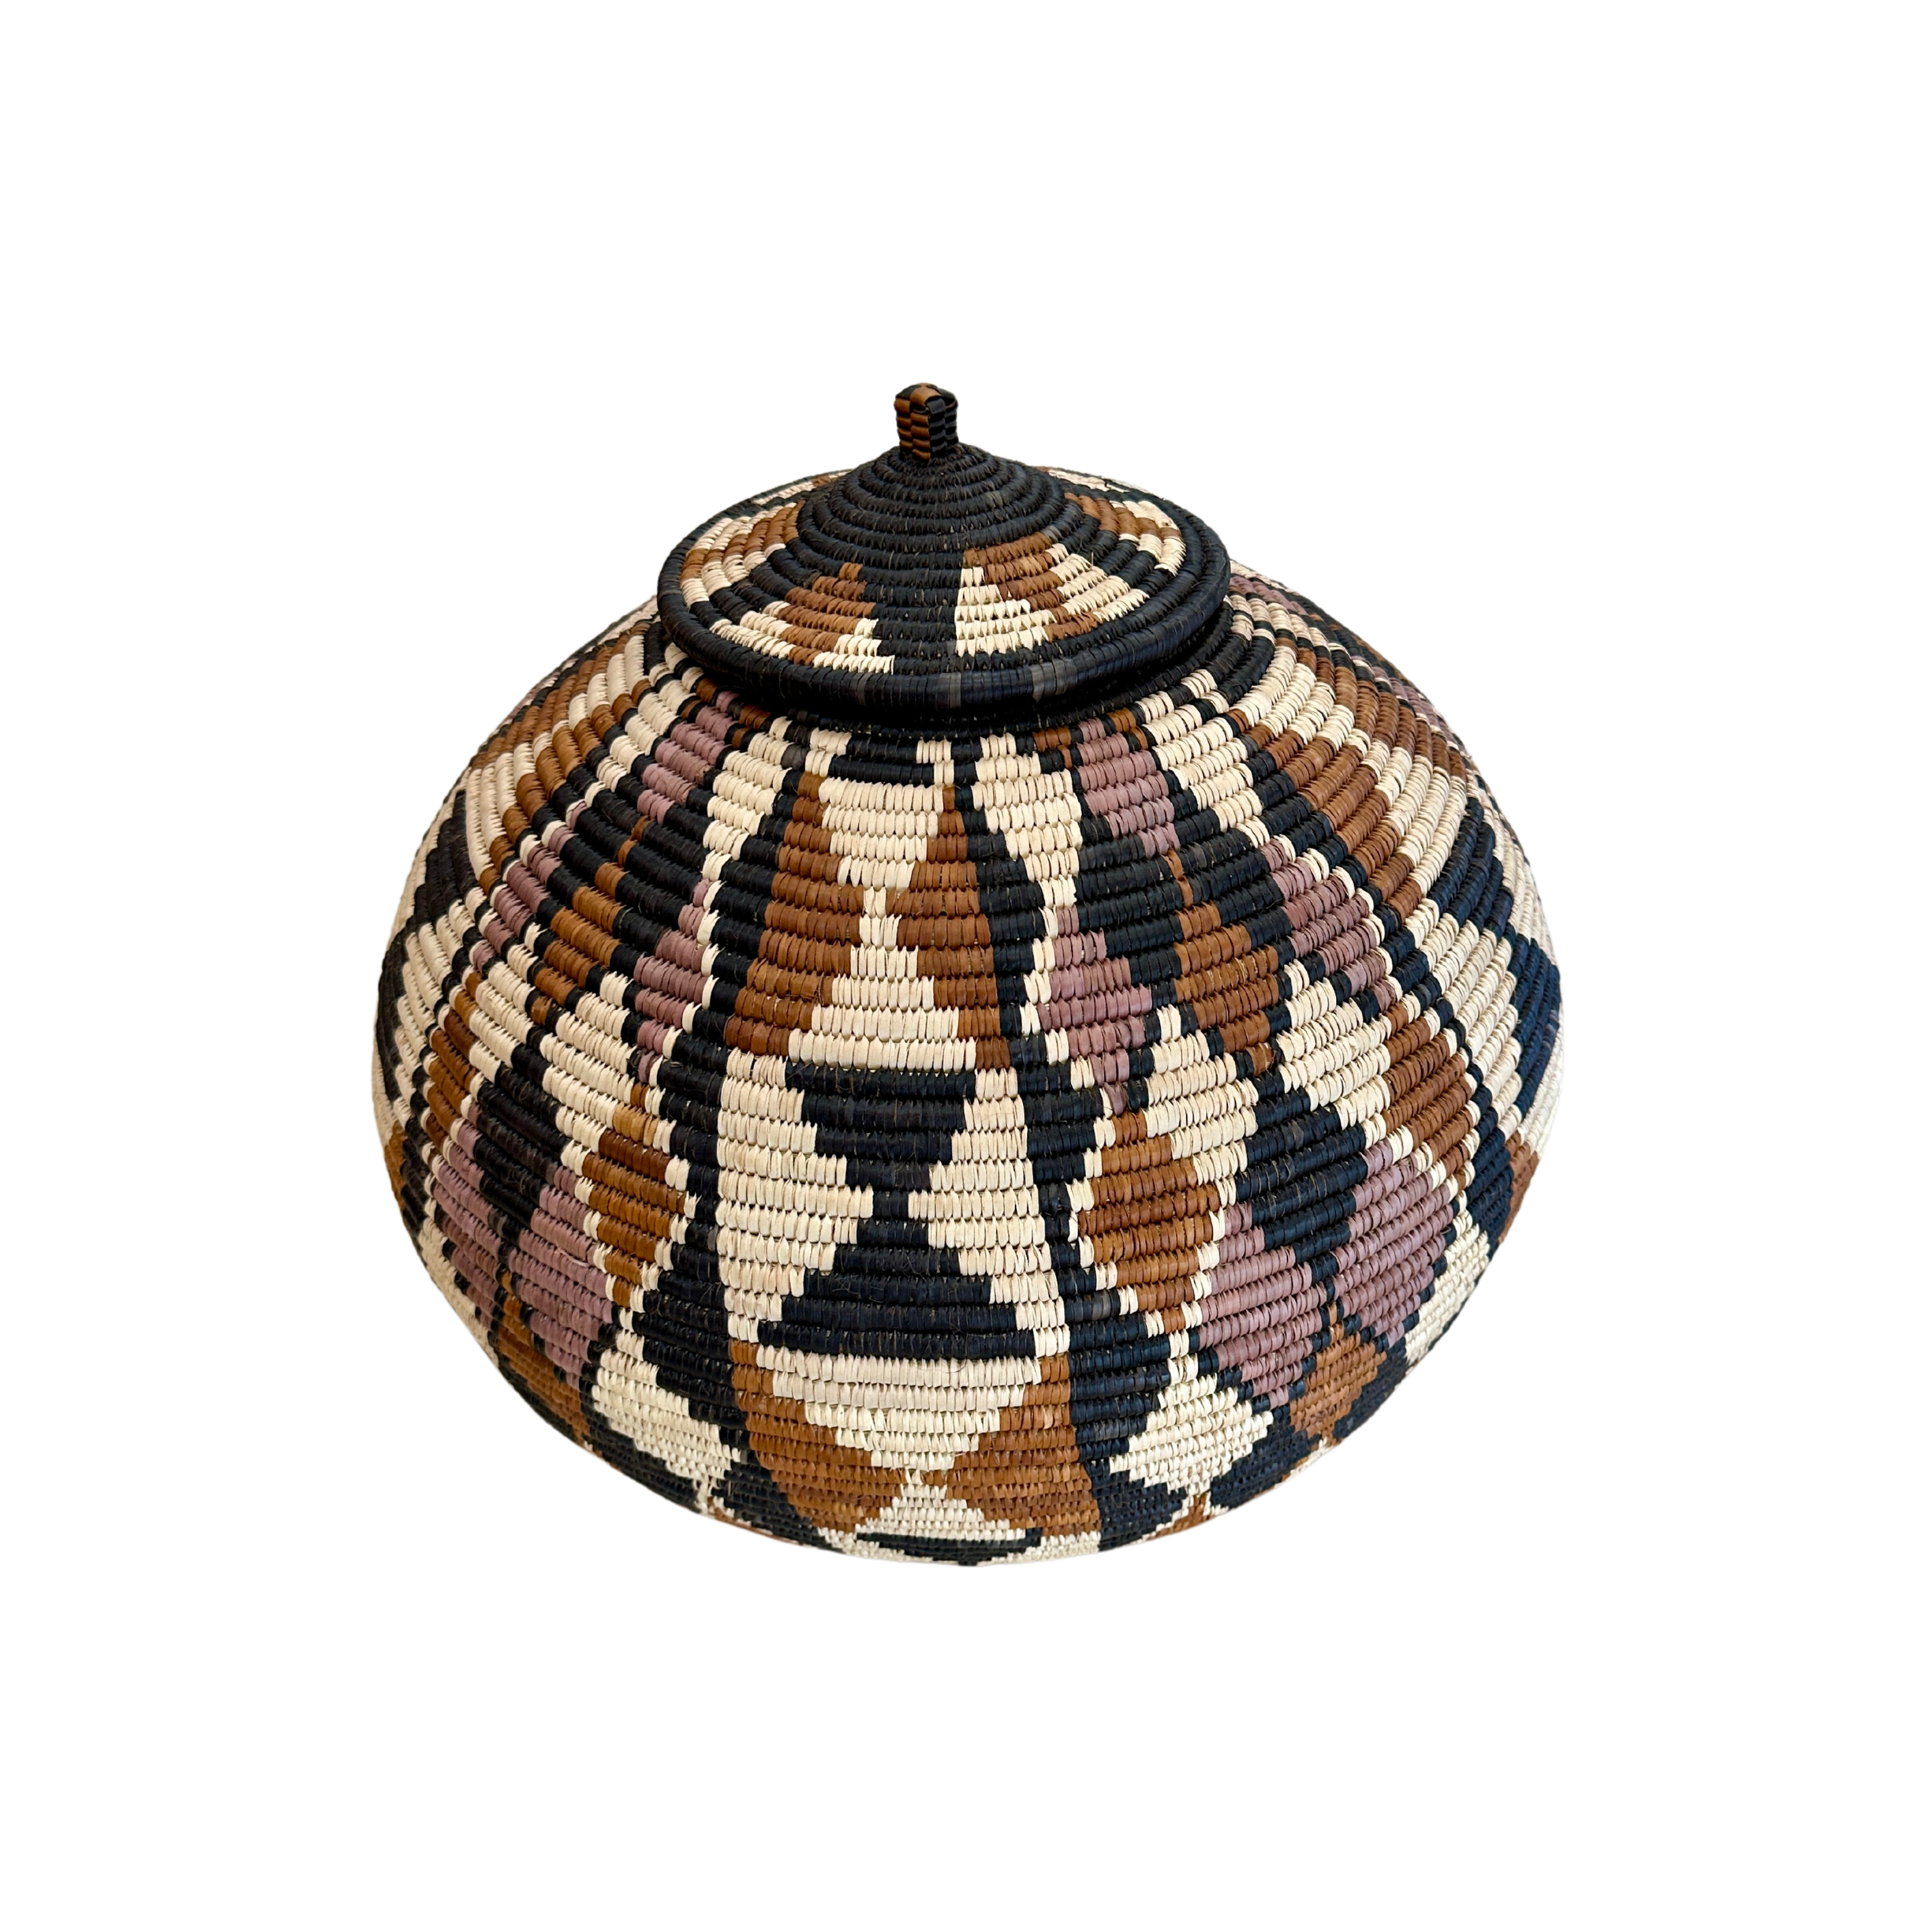 Hand Weaved Marriage Basket - The Ntombi Basket